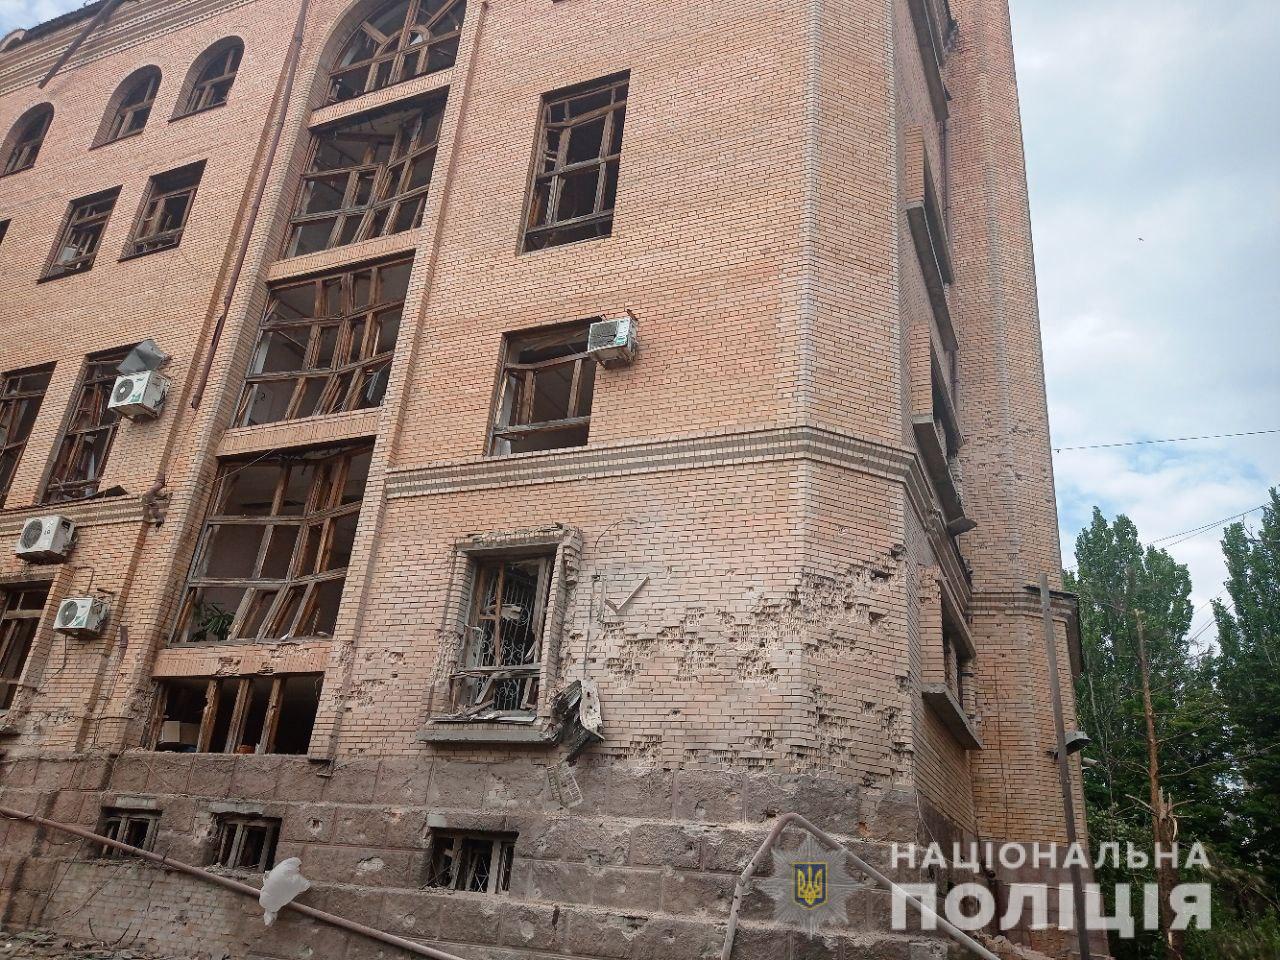 12 июня от обстрелов россиян адали более 40 гражданских объектов, большинство из которых — жилые дома